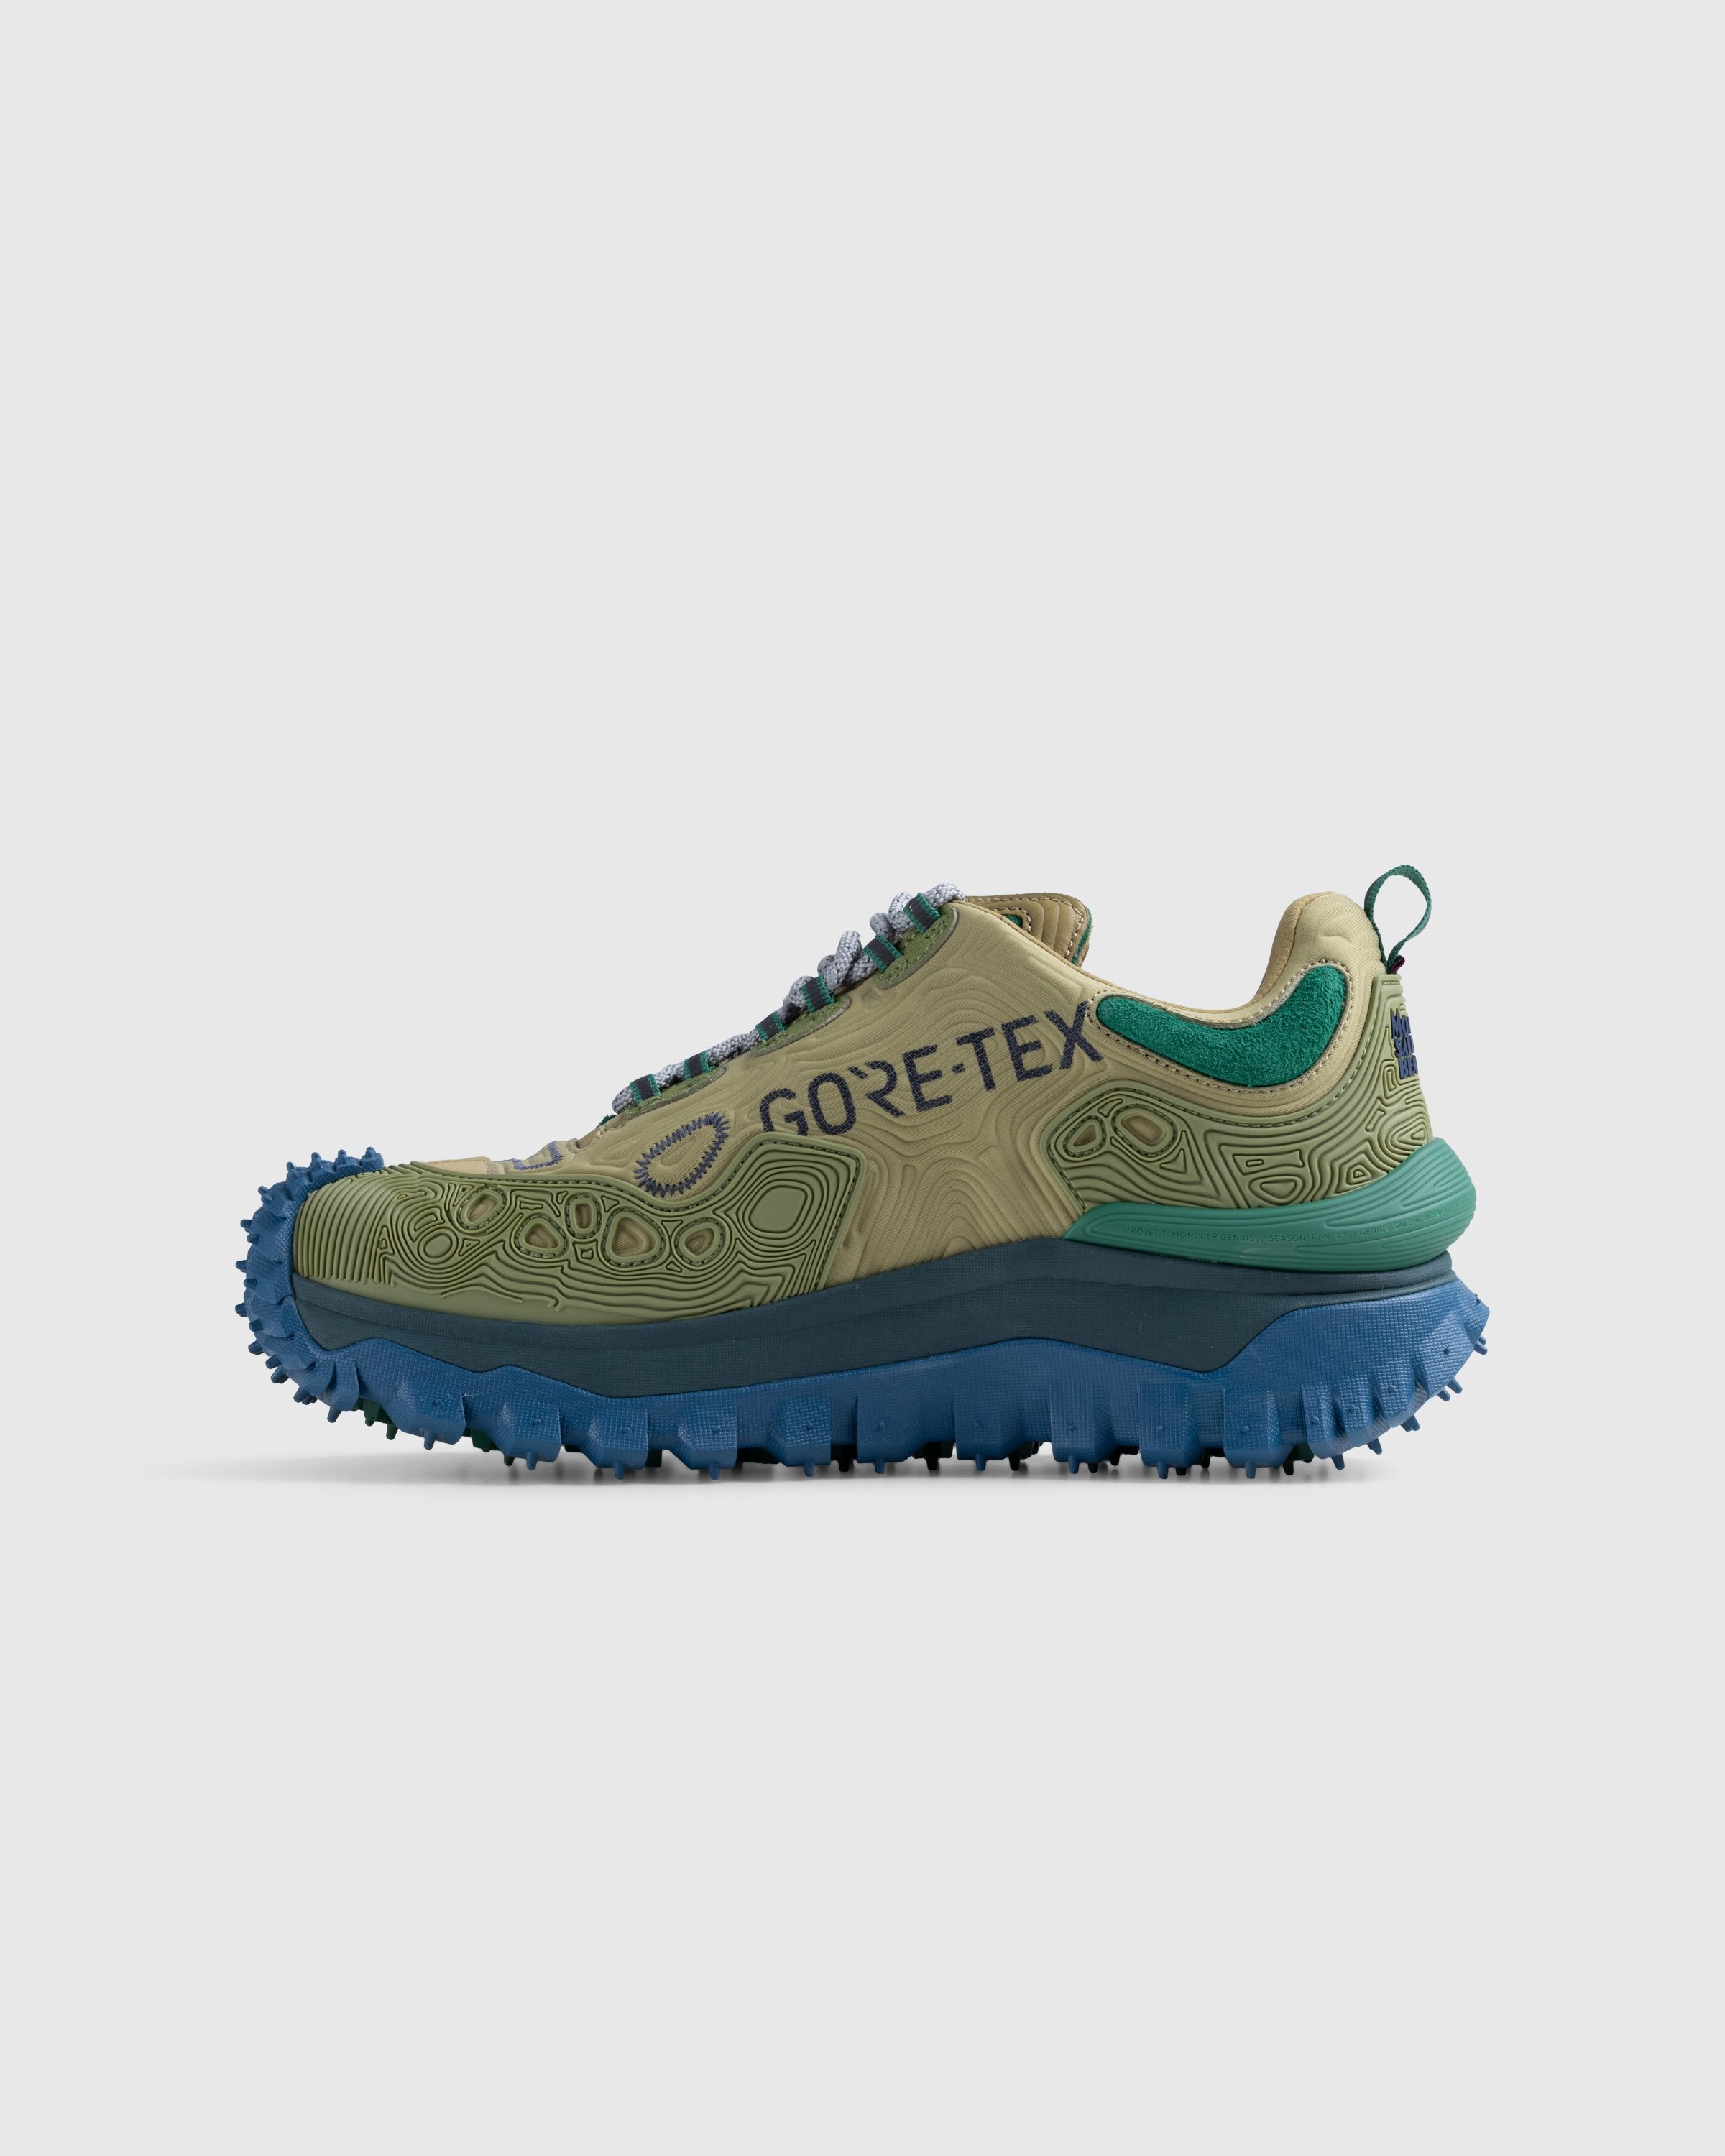 Moncler x Salehe Bembury – Trailgrip Grain Sneakers Beige - Low Top Sneakers - Beige - Image 2